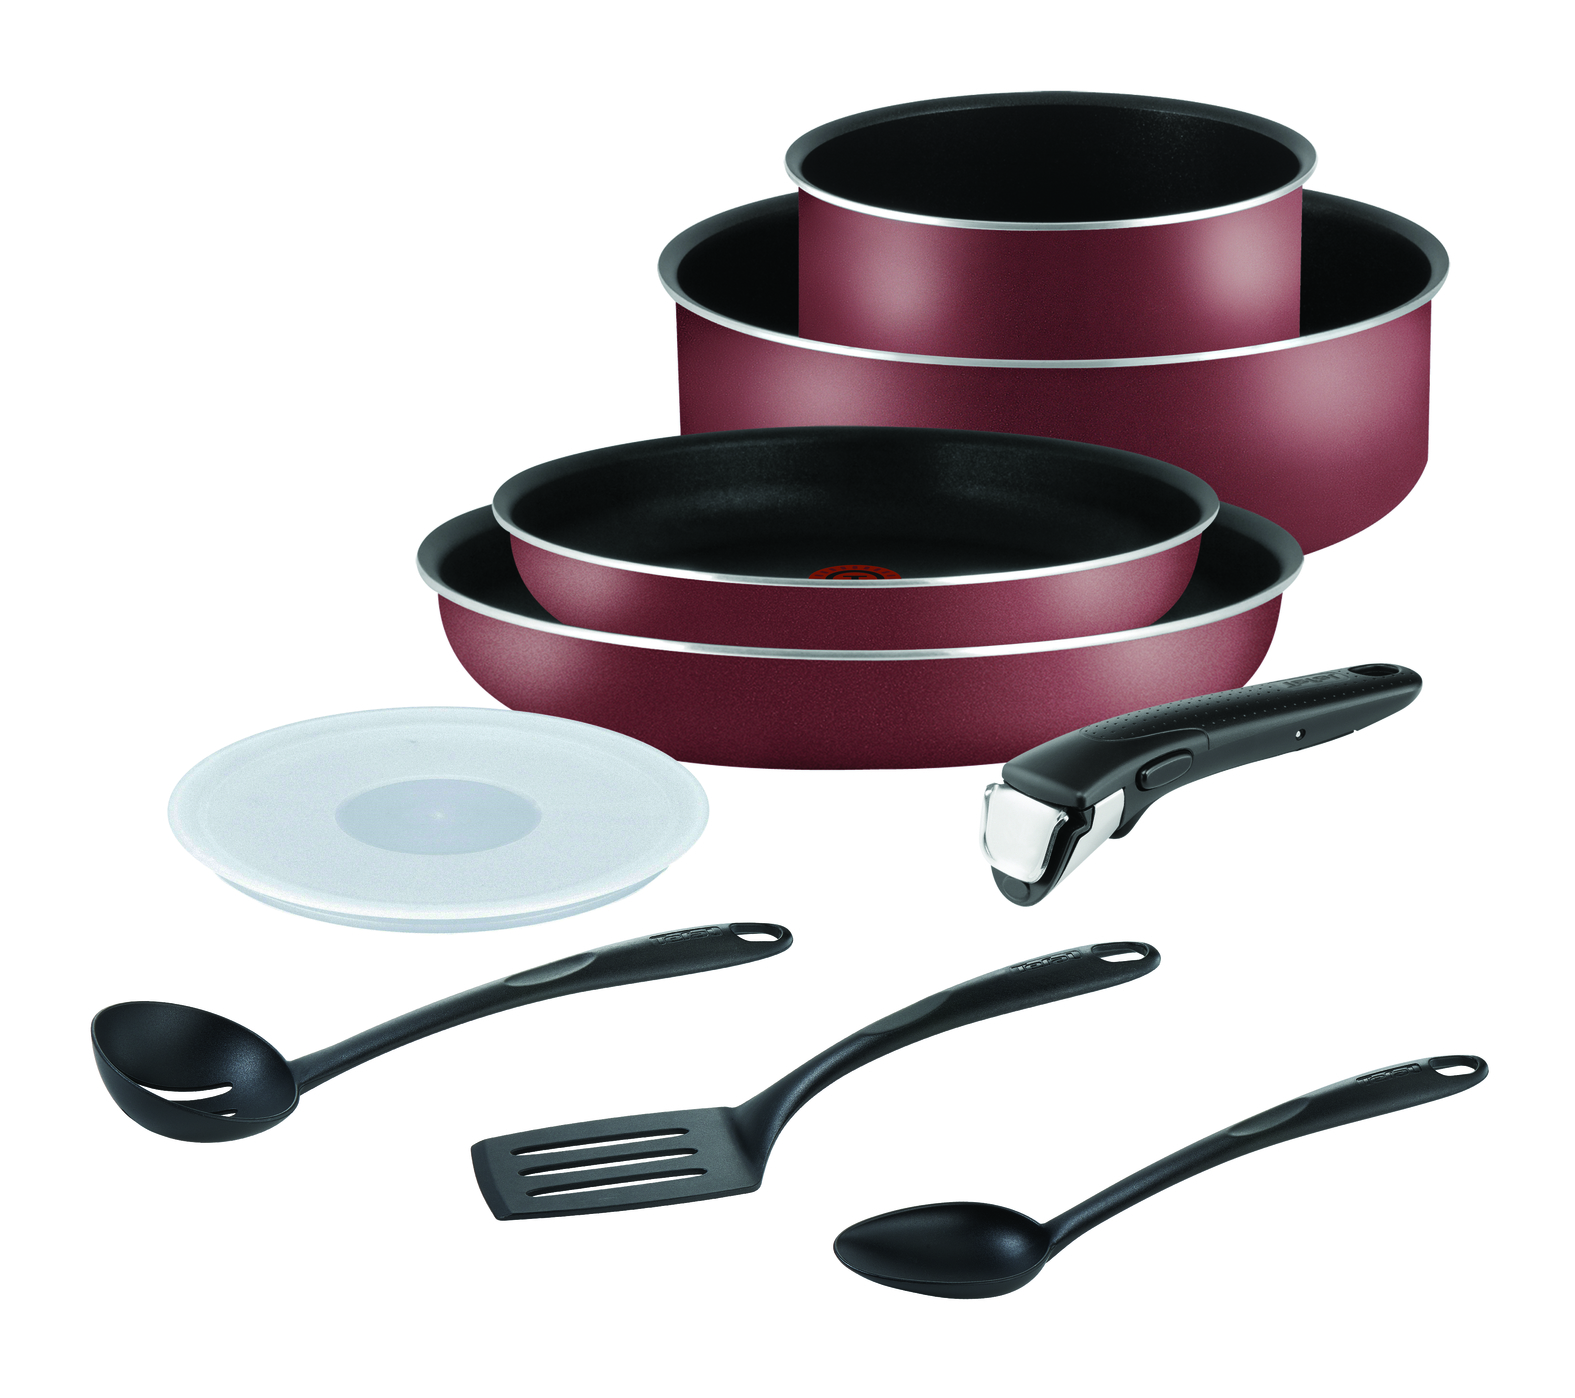 Набор посуды Ingenio RED 9 предметов 04186840 набор посуды со съемной ручкой ingenio unlimited 3 предмета 24 28 см l7638942